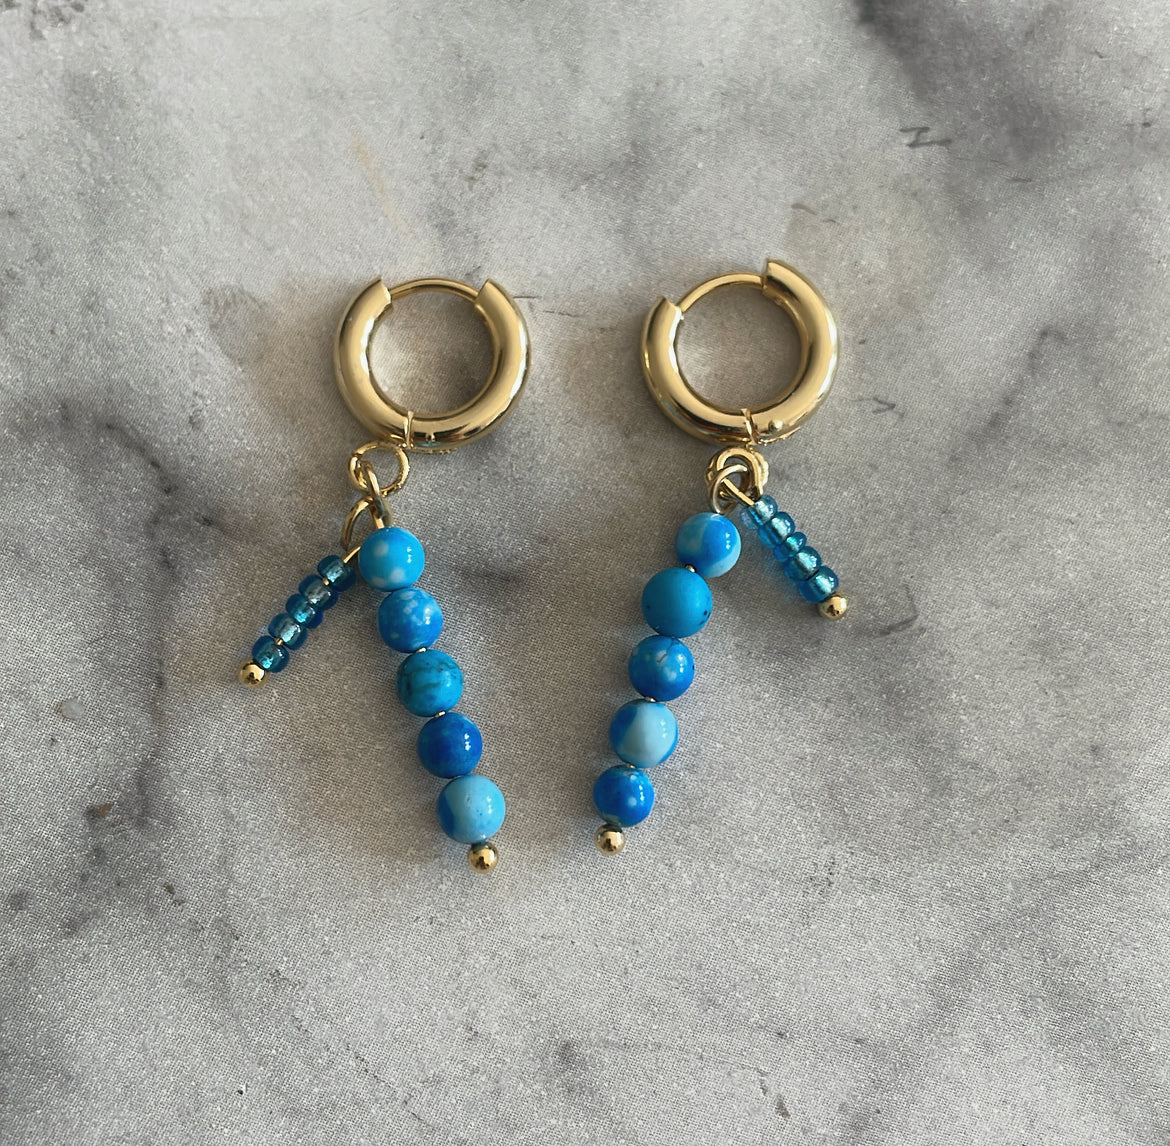 ‘BLUE SEA’ earrings